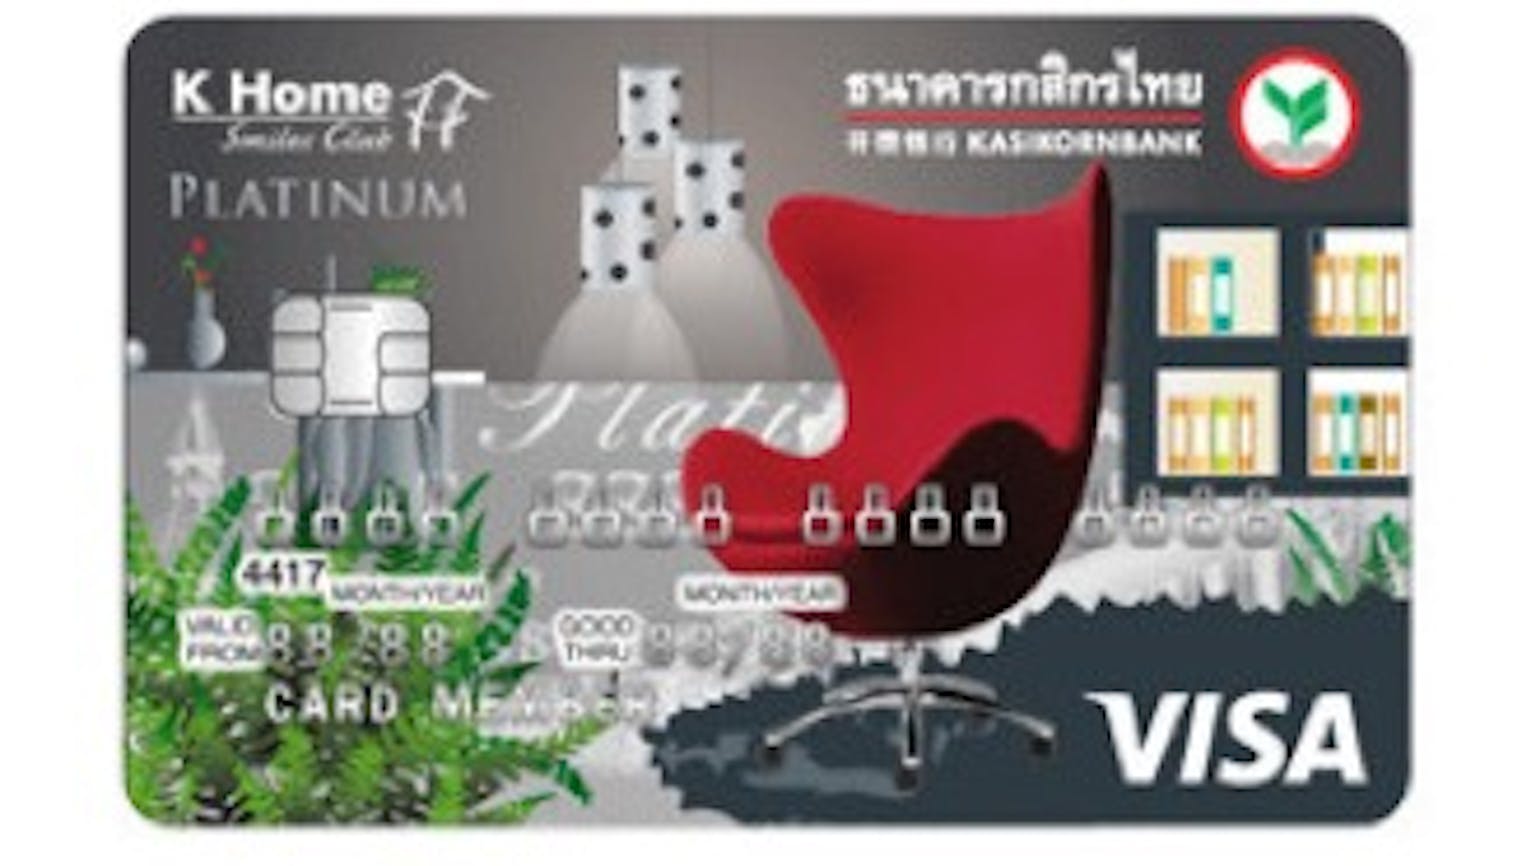 บัตรเครดิต เค-โฮม สมายส์ คลับ กสิกรไทย